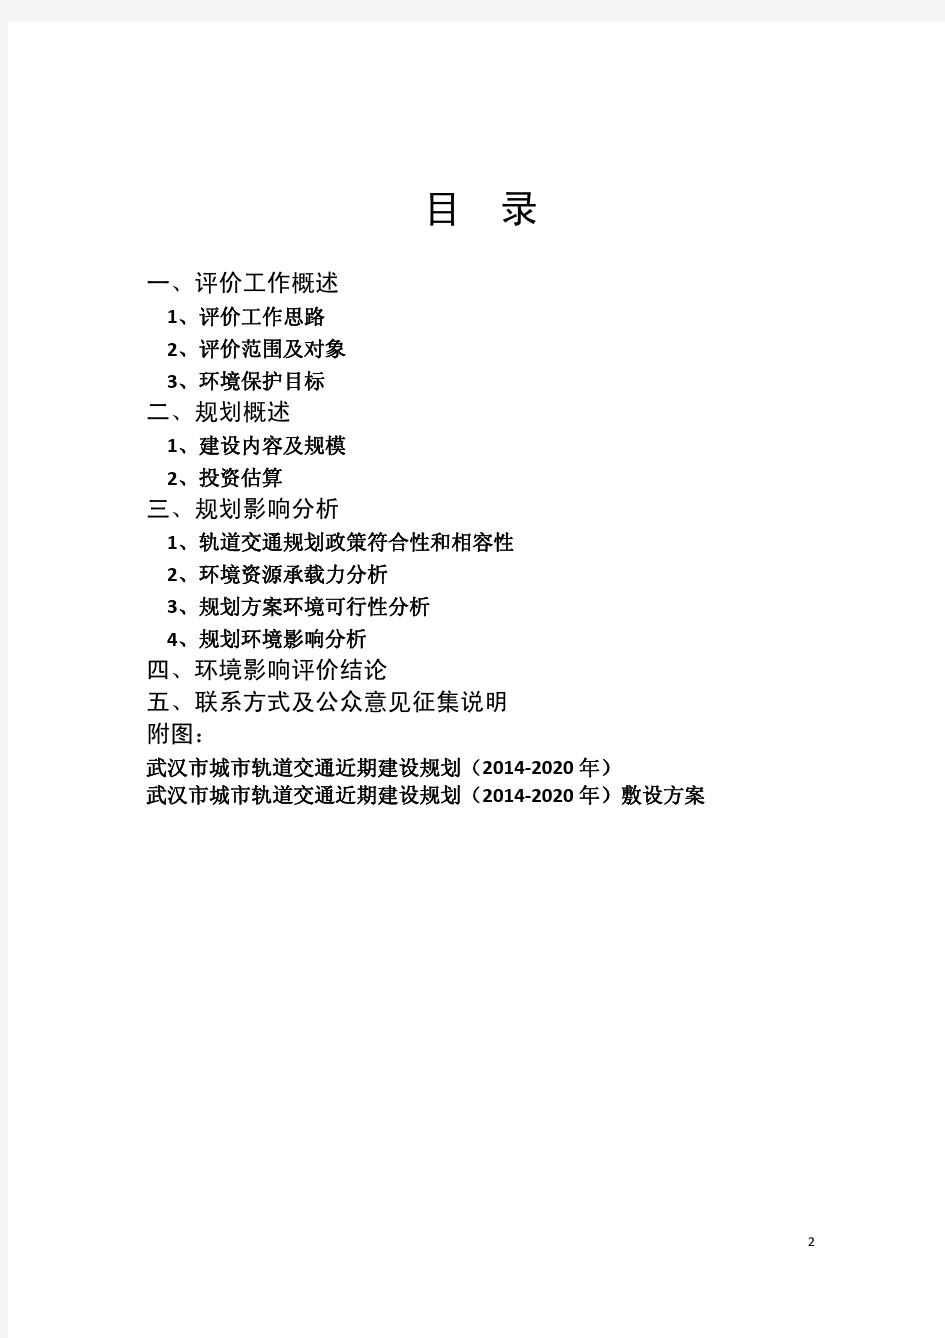 武汉市城市轨道交通近期建设规划(2014-2020年)环境影响报告(简本)